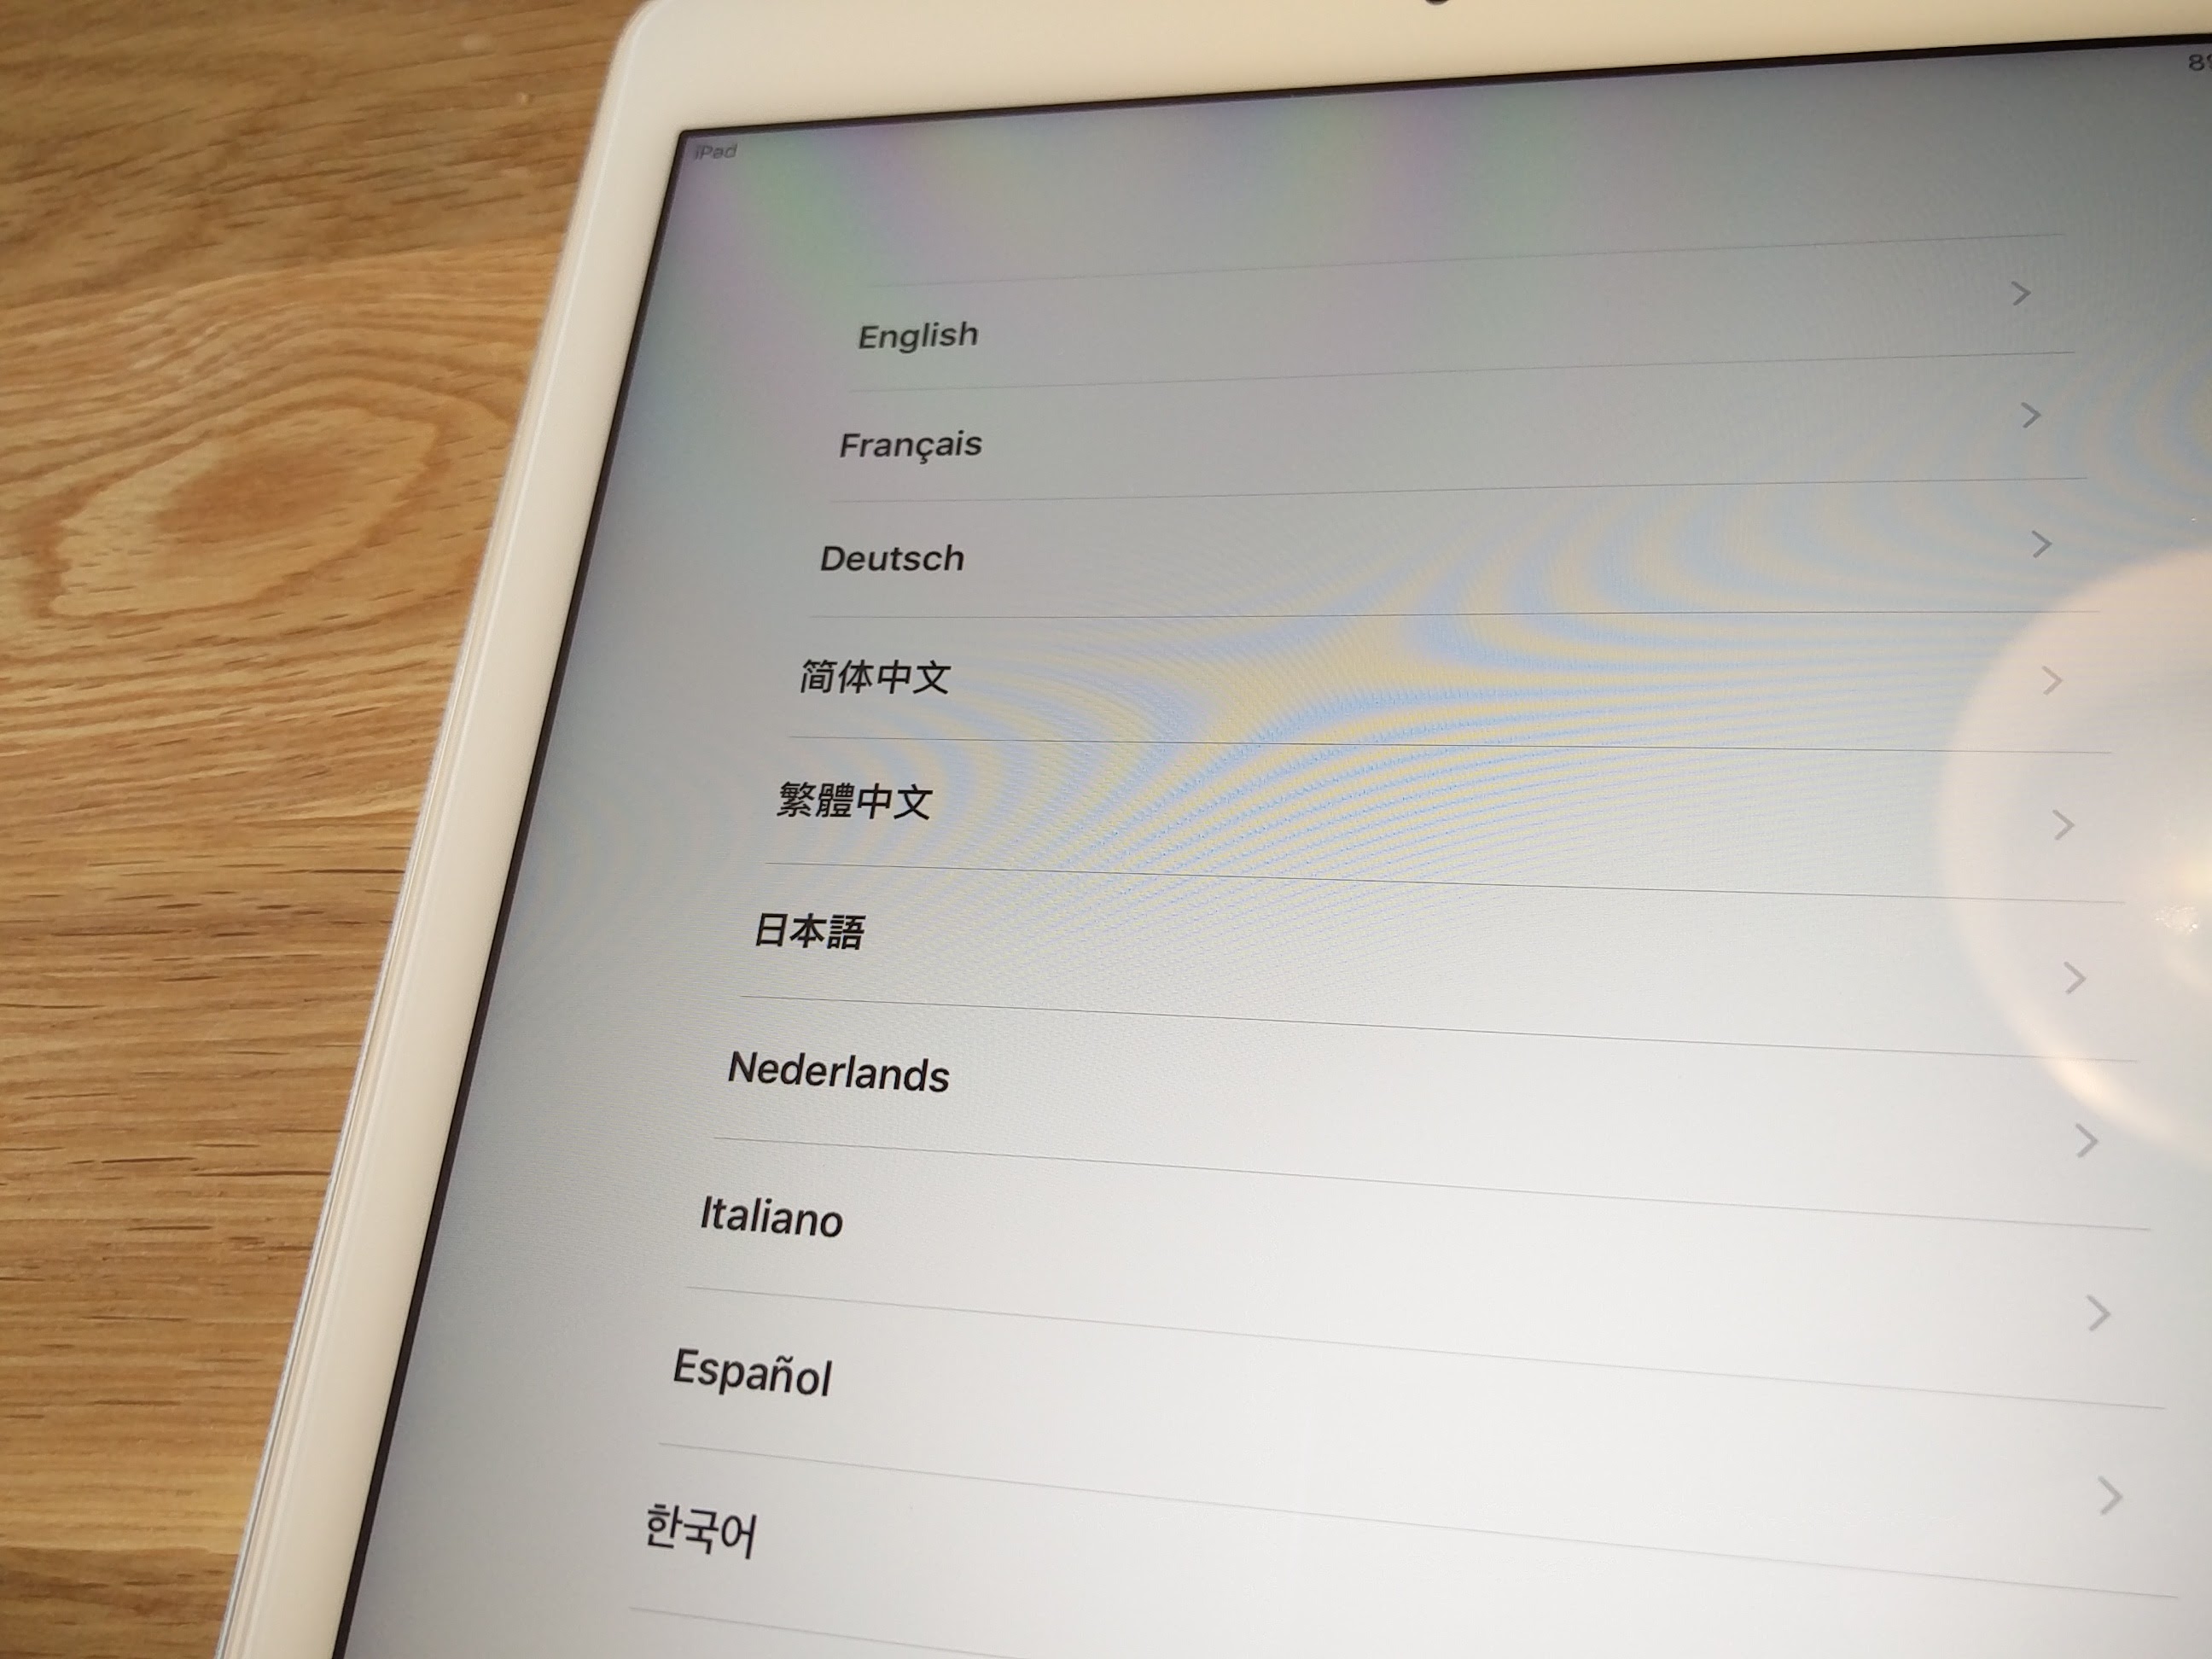 言語は当然日本語を選択。いやー。よくできてますね、iPad(iOS)は。